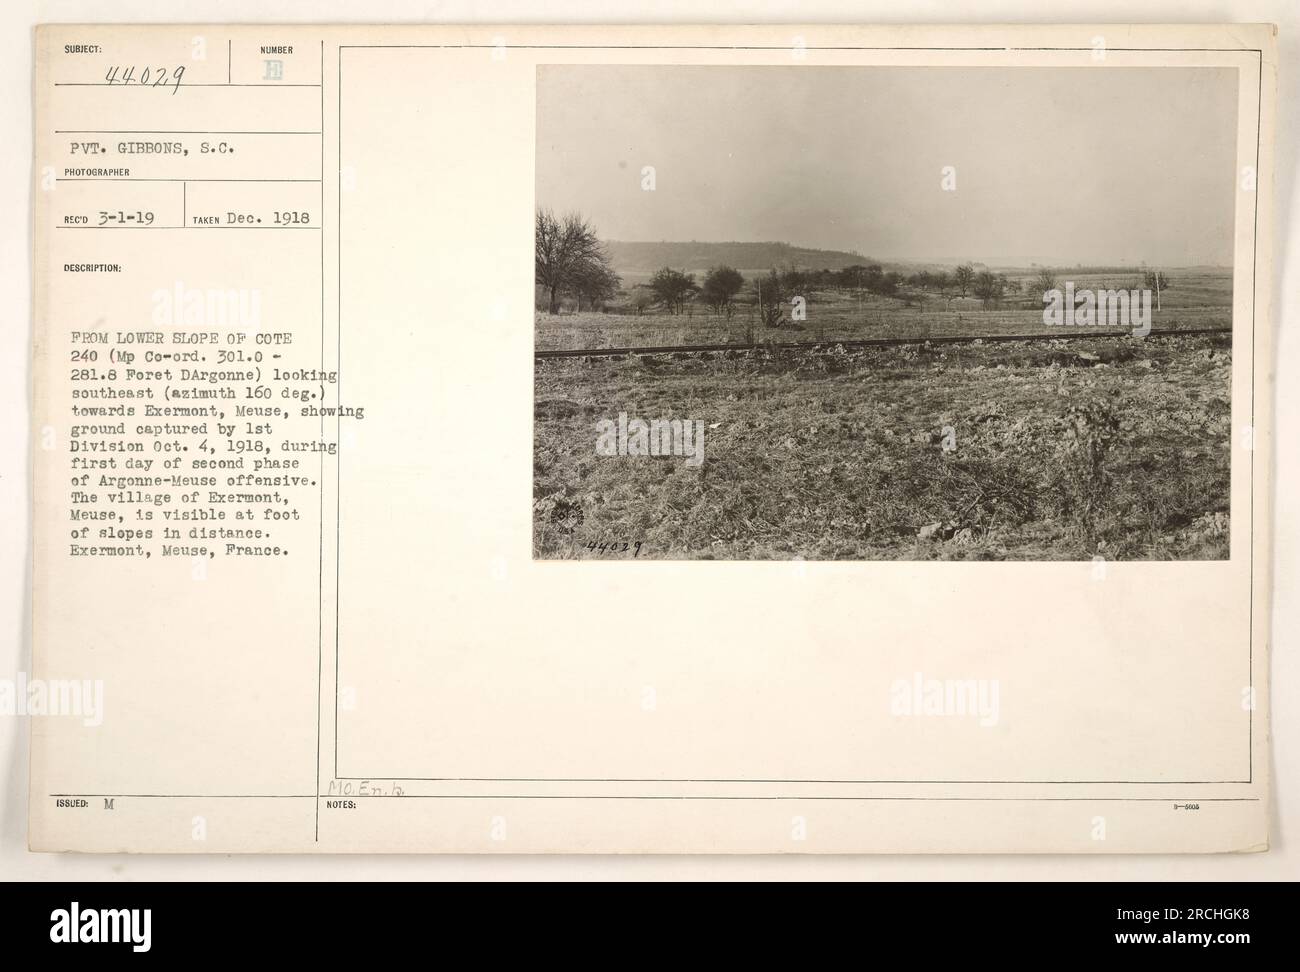 Gefreiter Gibbons hat dieses Foto am 1918. Dezember aufgenommen. Das Bild zeigt Boden, der von der 1. Division am 4. Oktober 1918 während des ersten Tages der zweiten Phase der Argonne-Mause-Offensive gefangen wurde. Das Bild wurde vom unteren Hang auf der Cote 240 aufgenommen, mit Blick nach Südosten in Richtung Exermont, Maas, mit dem Dorf in der Ferne sichtbar. Stockfoto